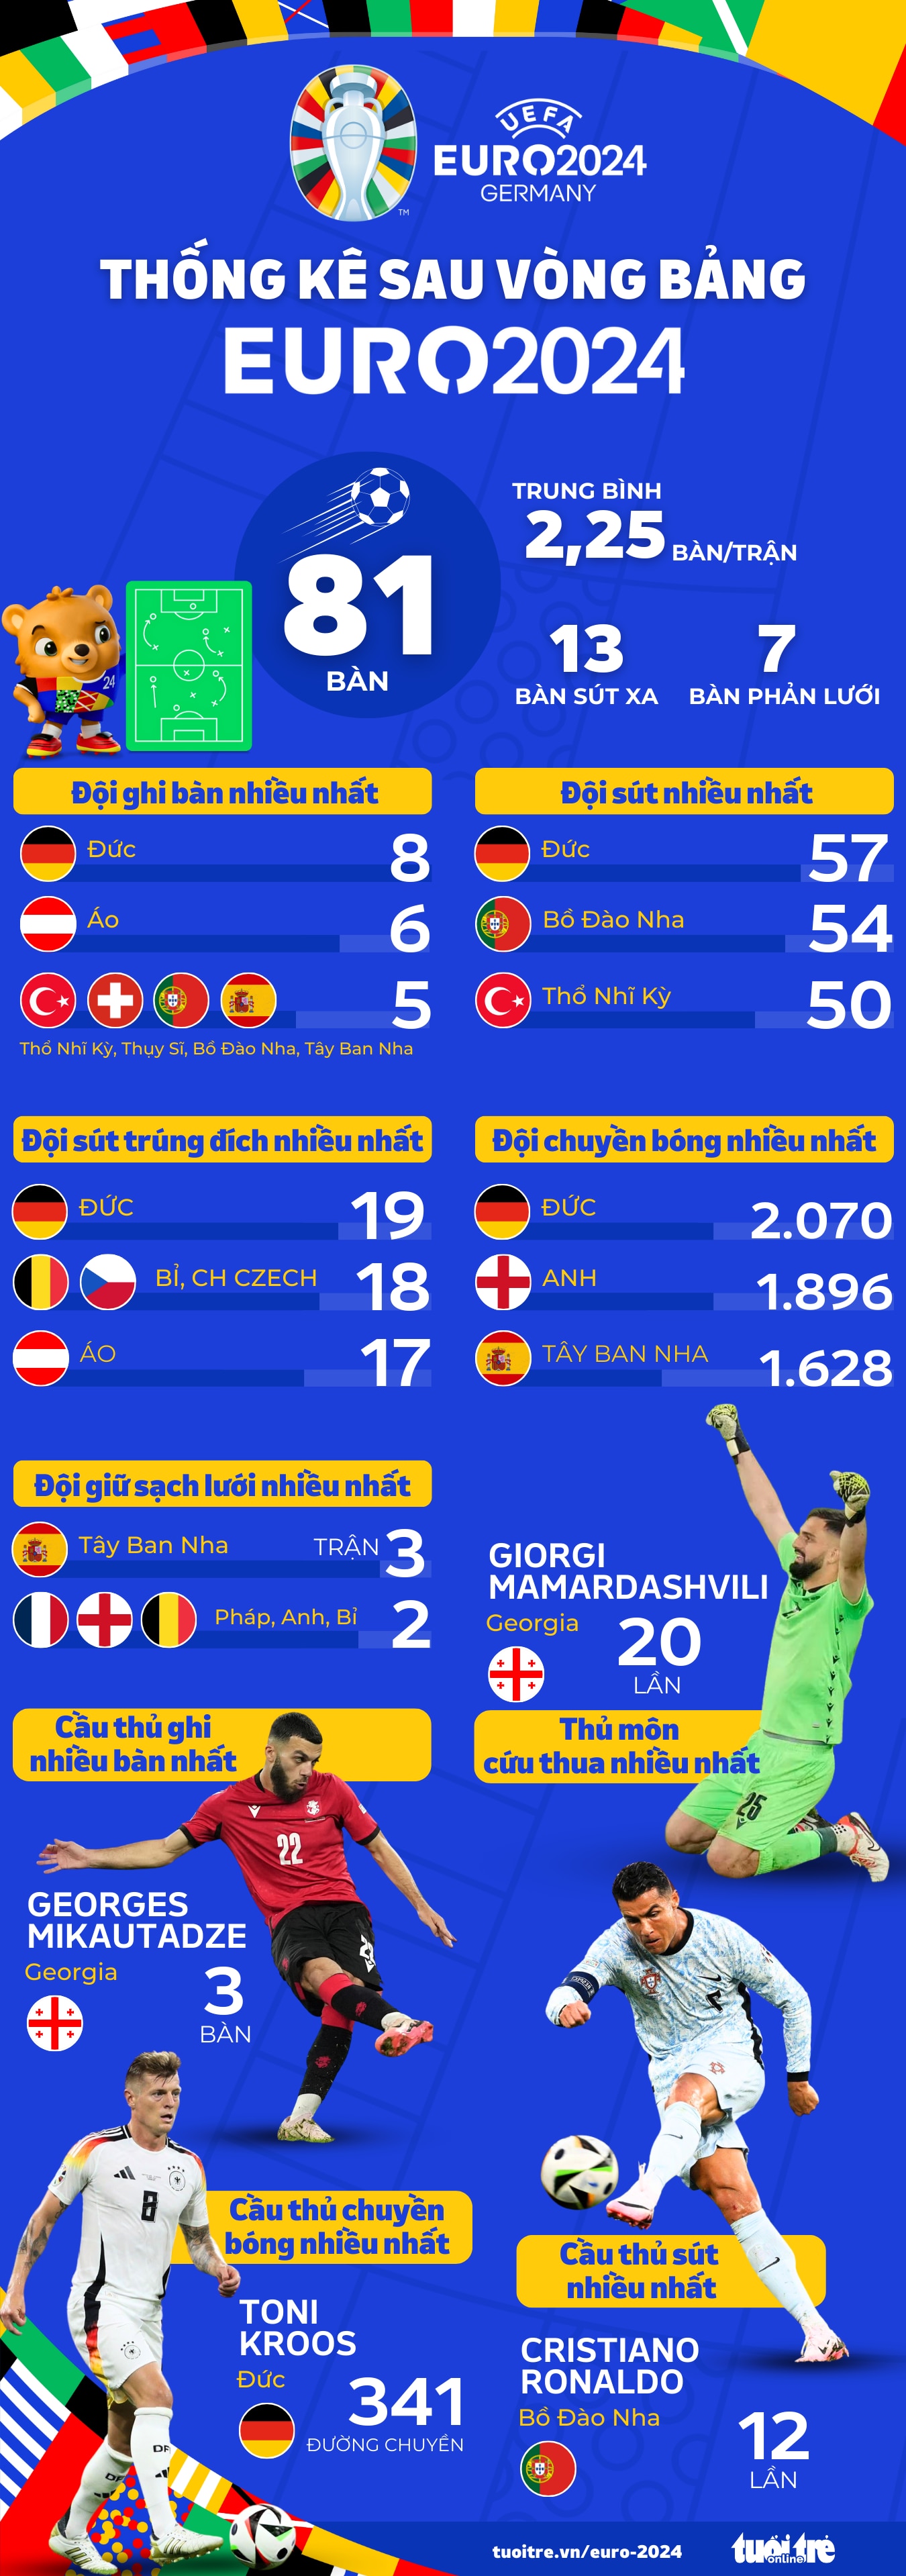 Thống kê sau vòng bảng Euro 2024 - Đồ họa: AN BÌNH